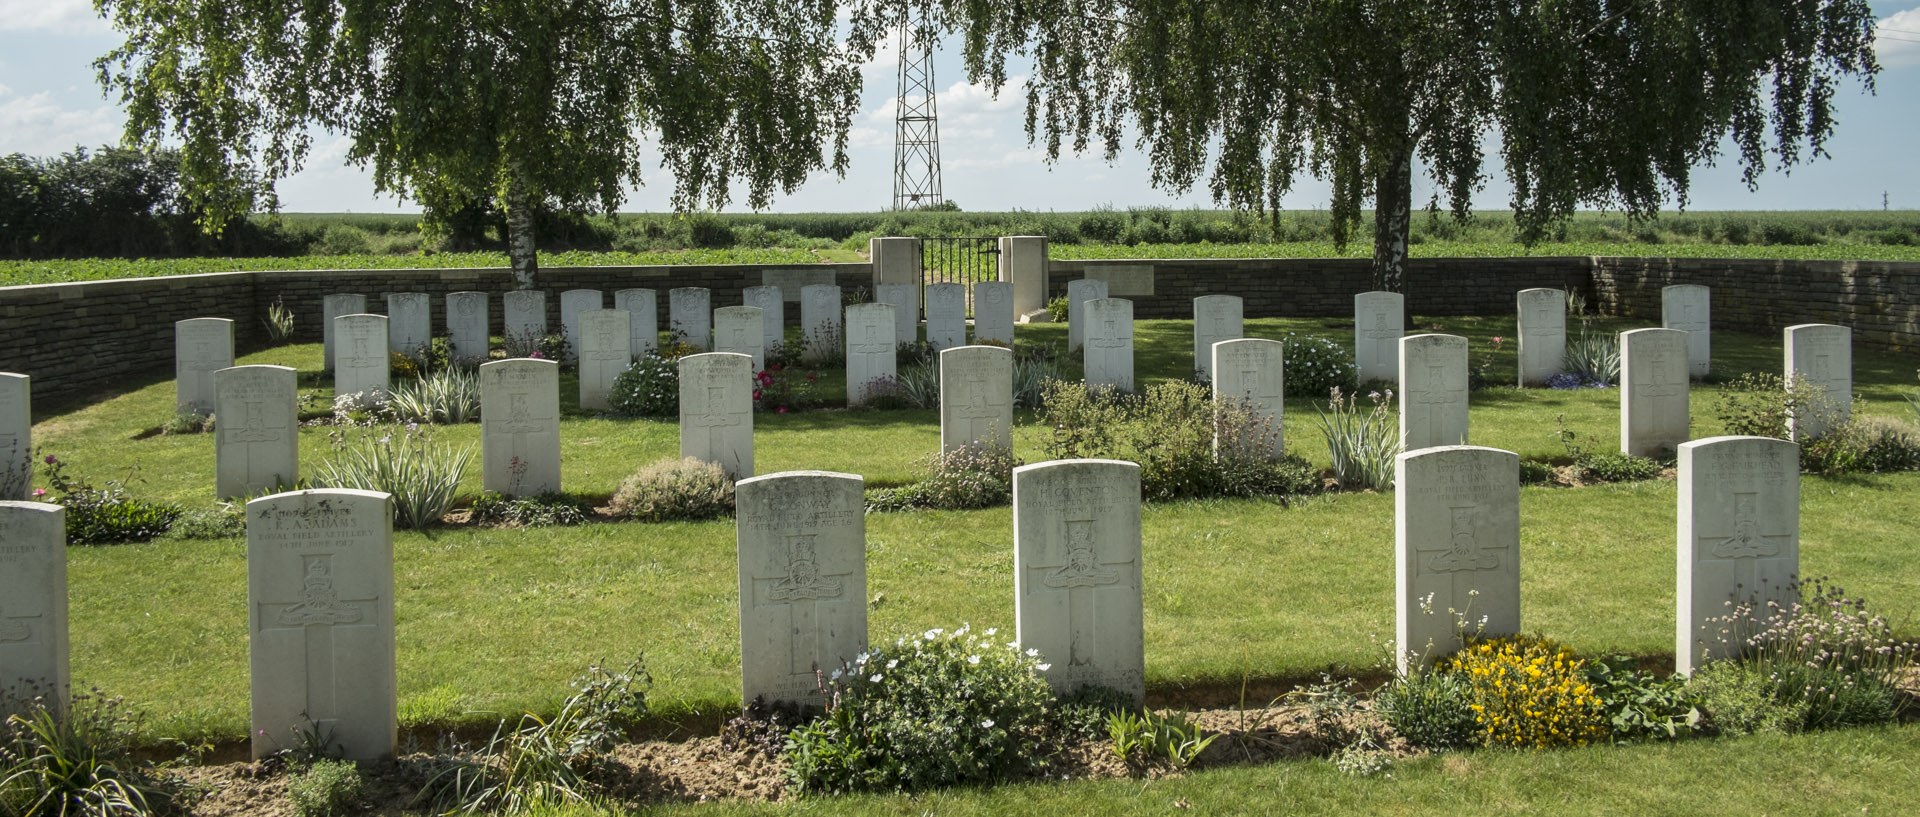 Dimanche 8 juin 2014, 15:22, Houdain Lane british cemetery, Tilloy les Mofflaines